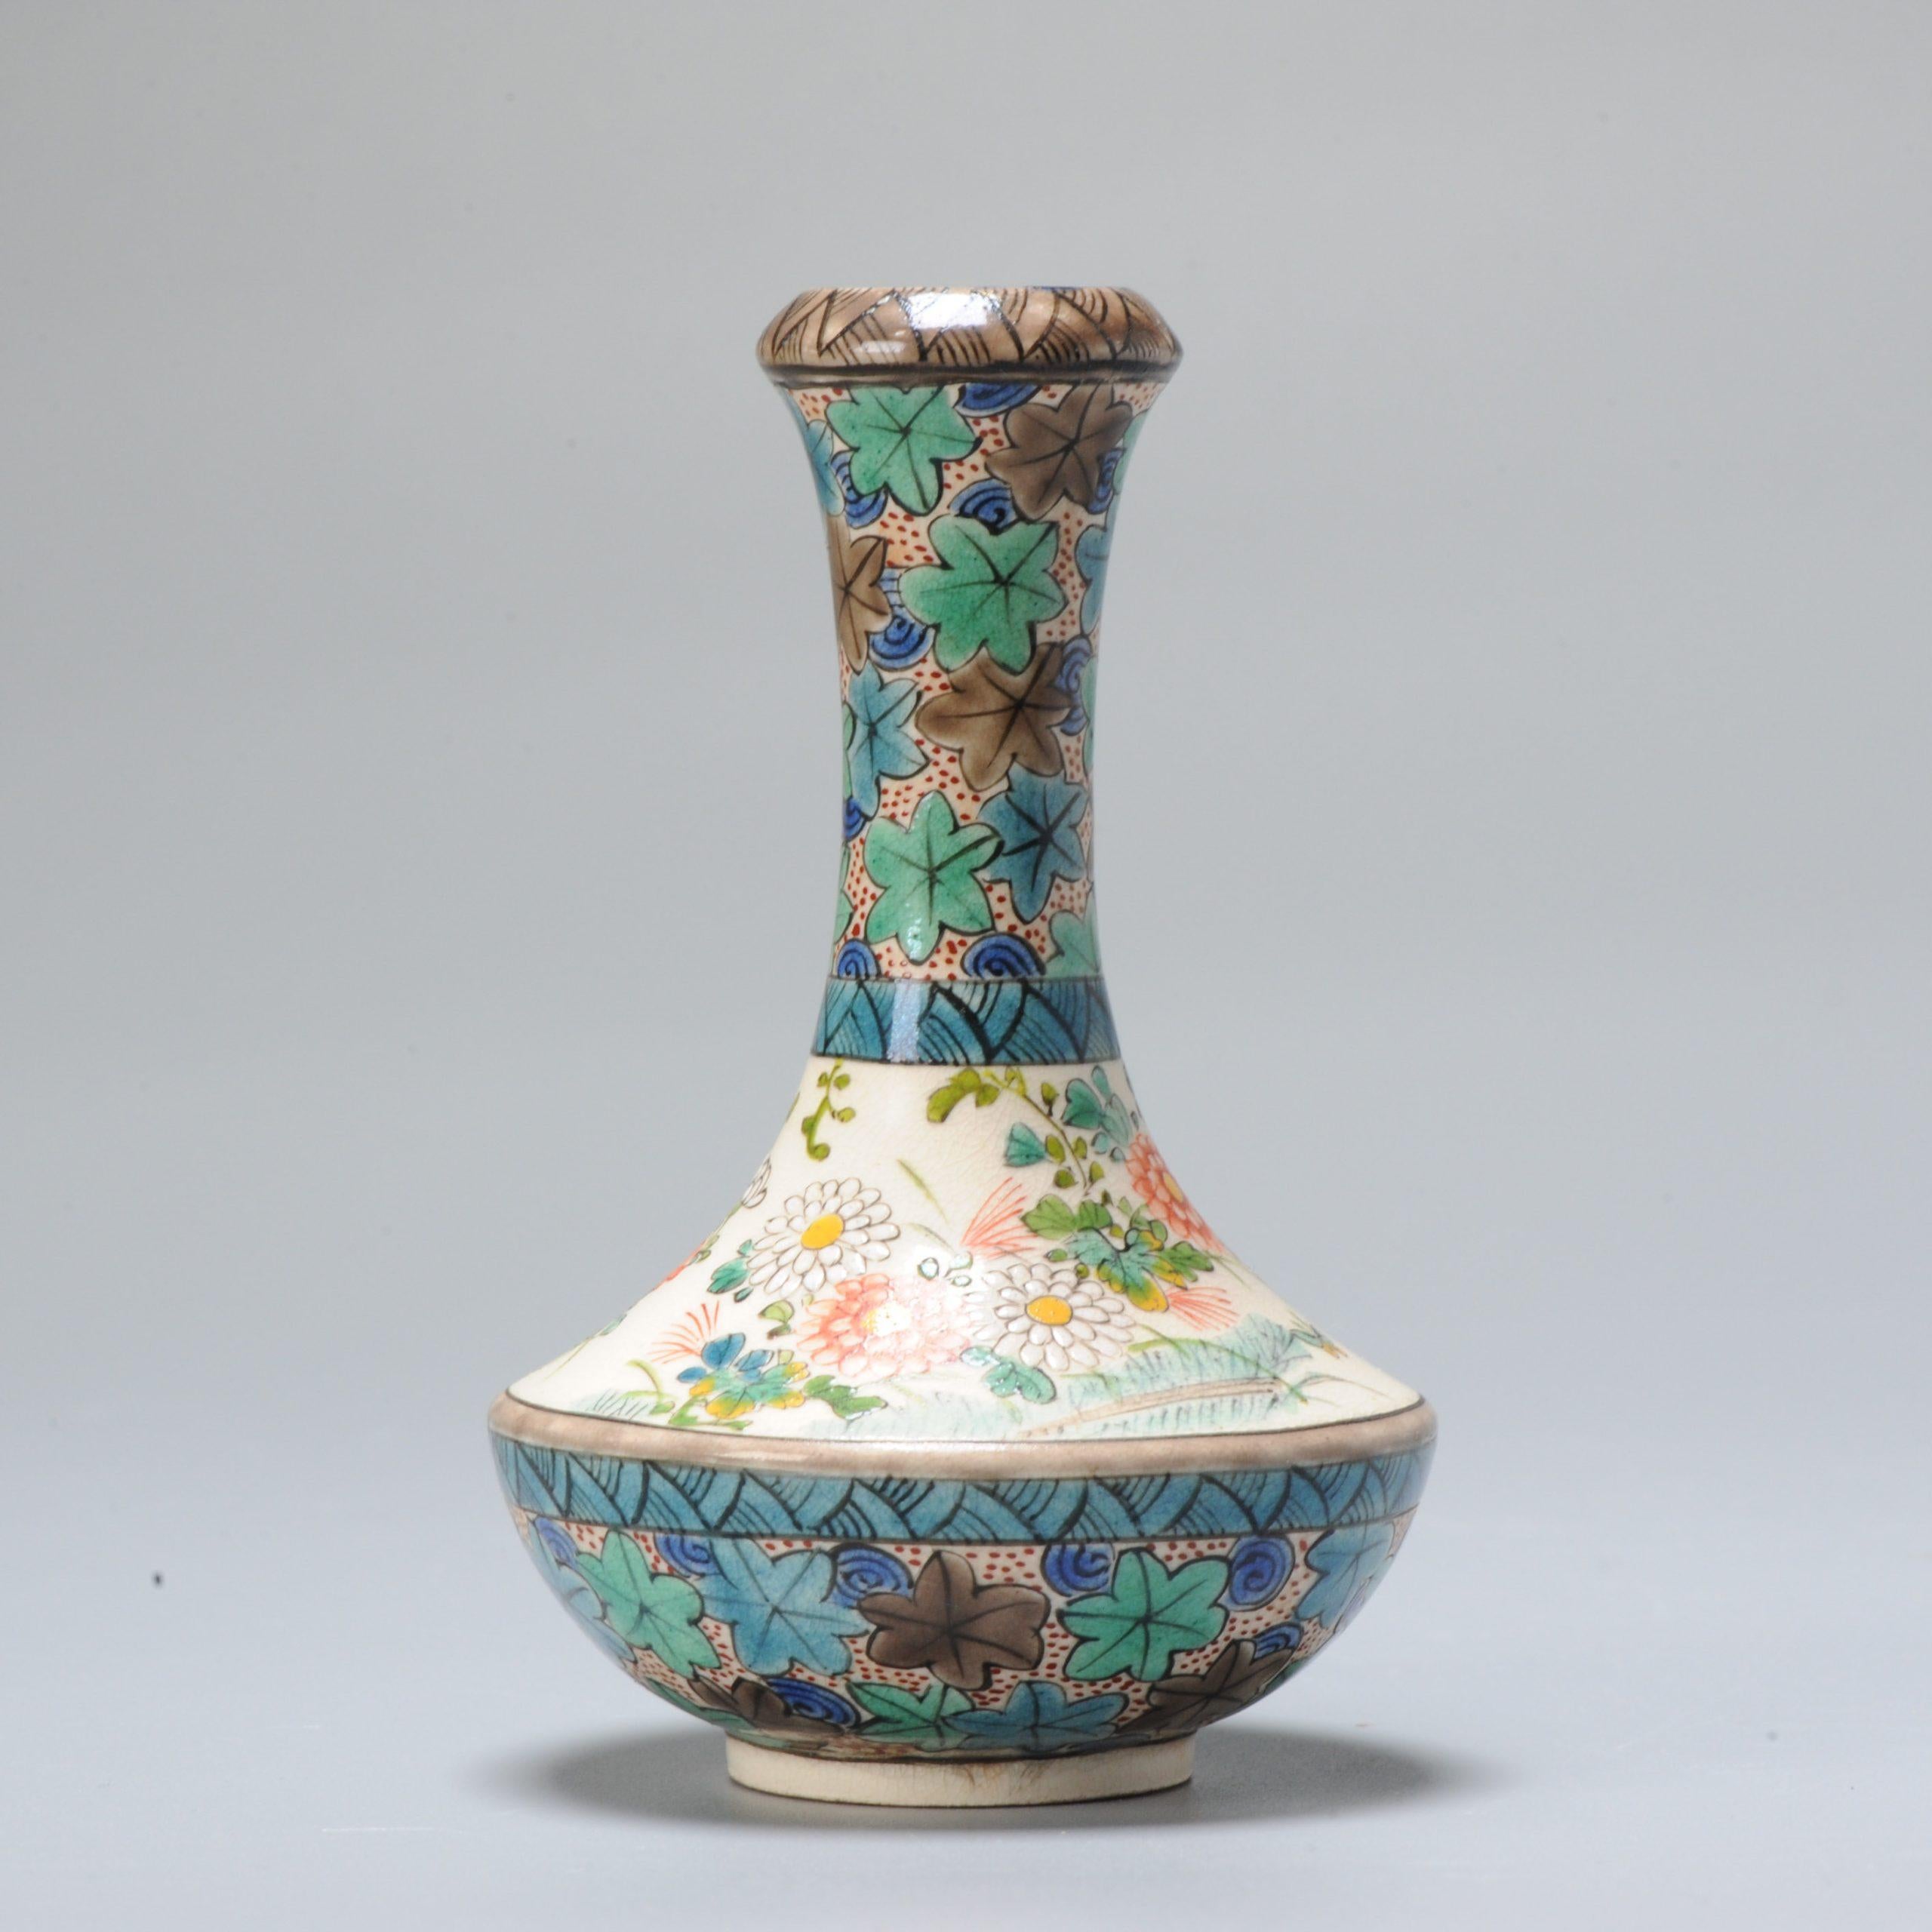 Fabuleux et petit vase en faïence japonaise de Satsuma de grande forme, scène et émaux.

Marqué : Chikusai / Bamboo Studio.

Informations complémentaires :
MATERIAL : Porcelaine et poterie
Type : Vase
Style japonais : Satsuma
Région d'origine :